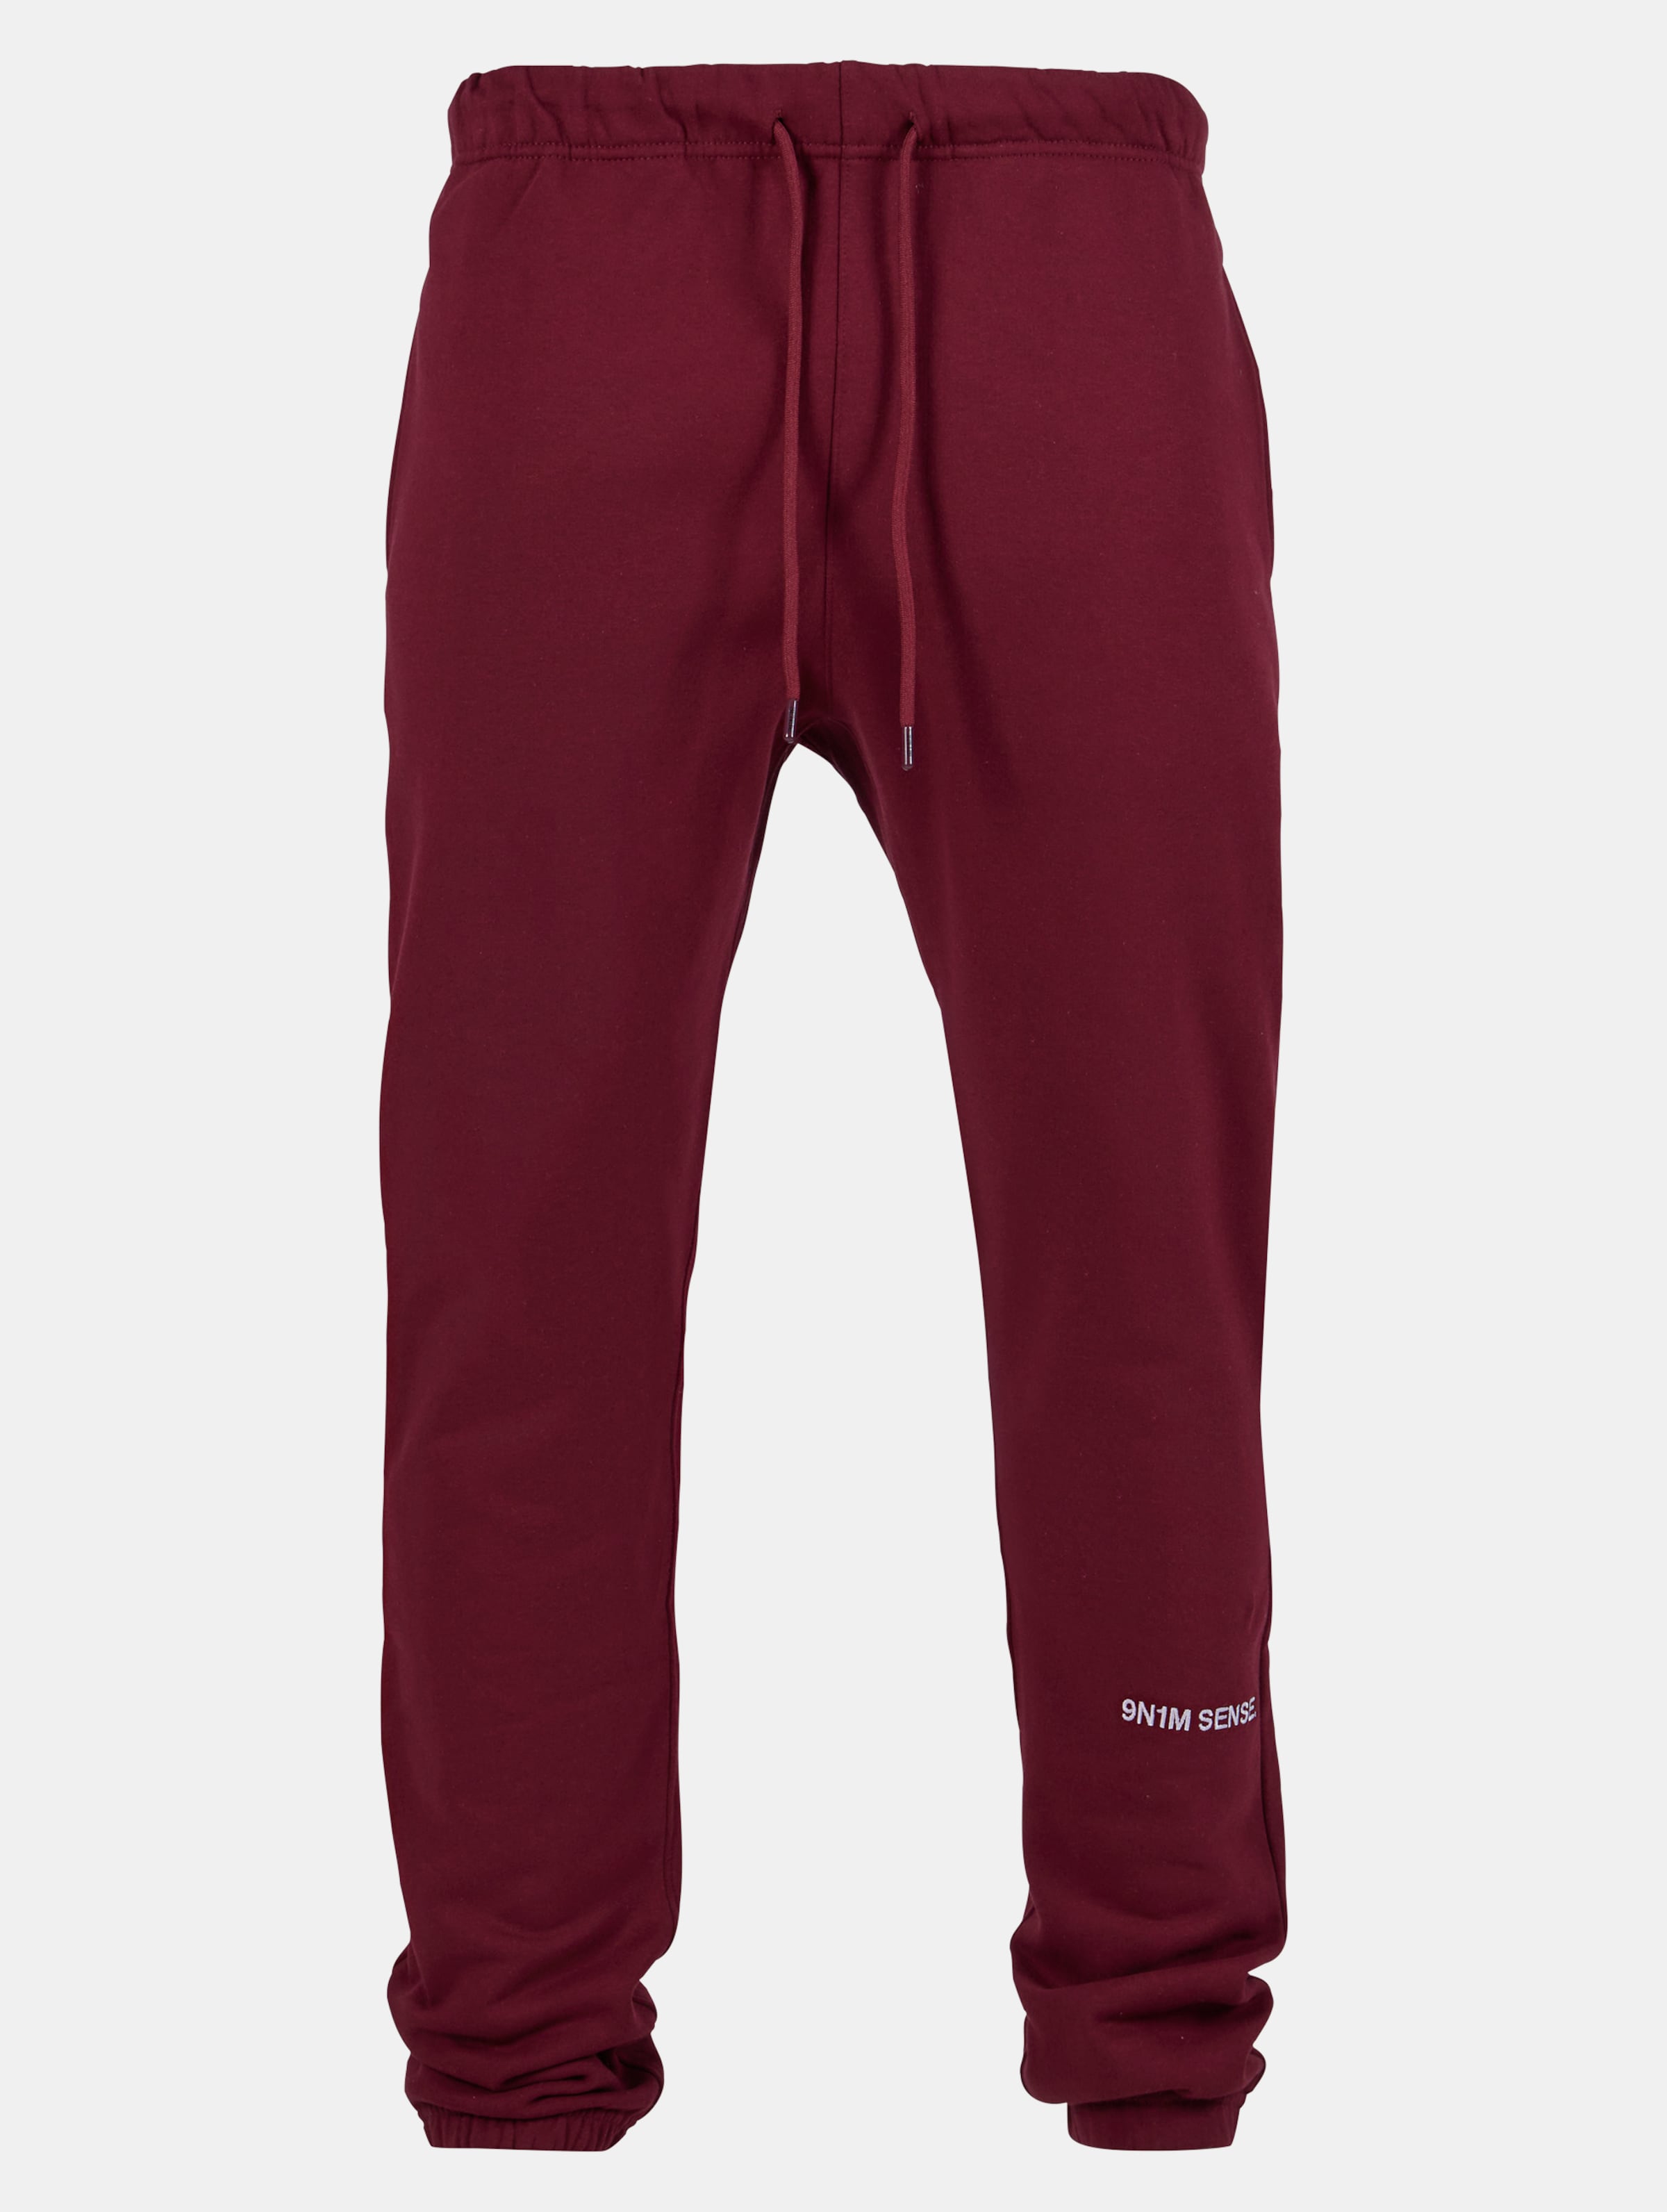 9N1M SENSE Essential Sweatpants Mannen op kleur rood, Maat XL